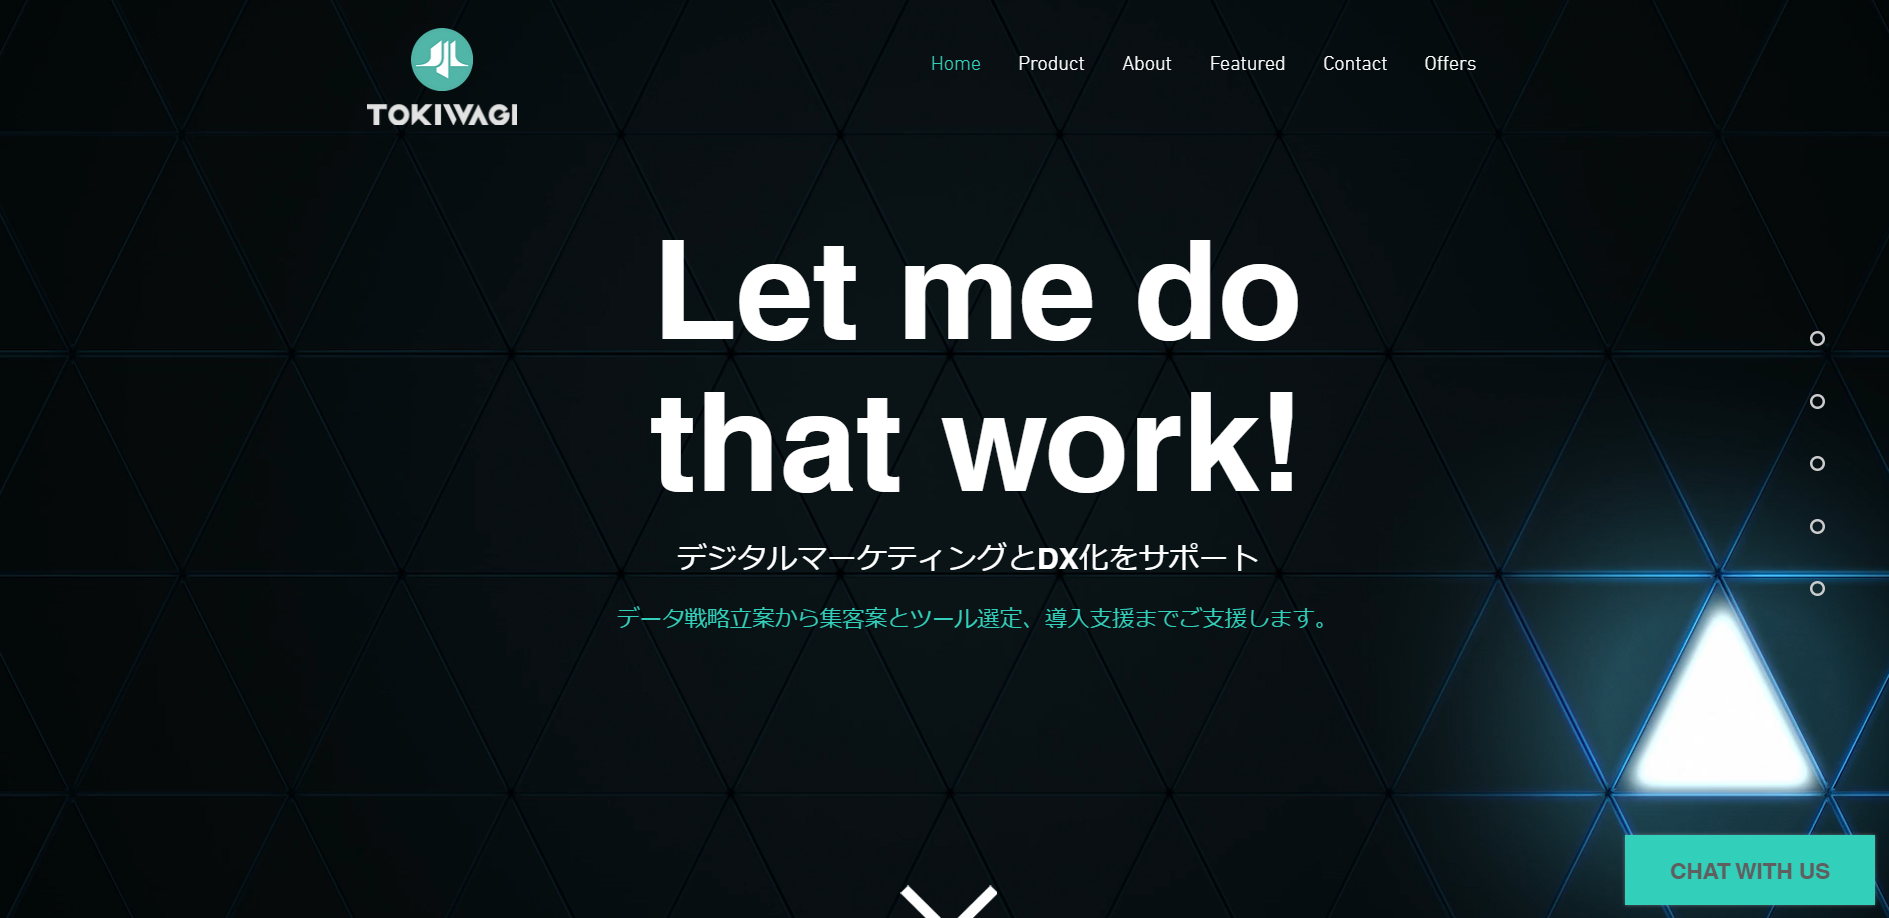 株式会社TOKIWAGIの株式会社TOKIWAGI:Web広告サービス